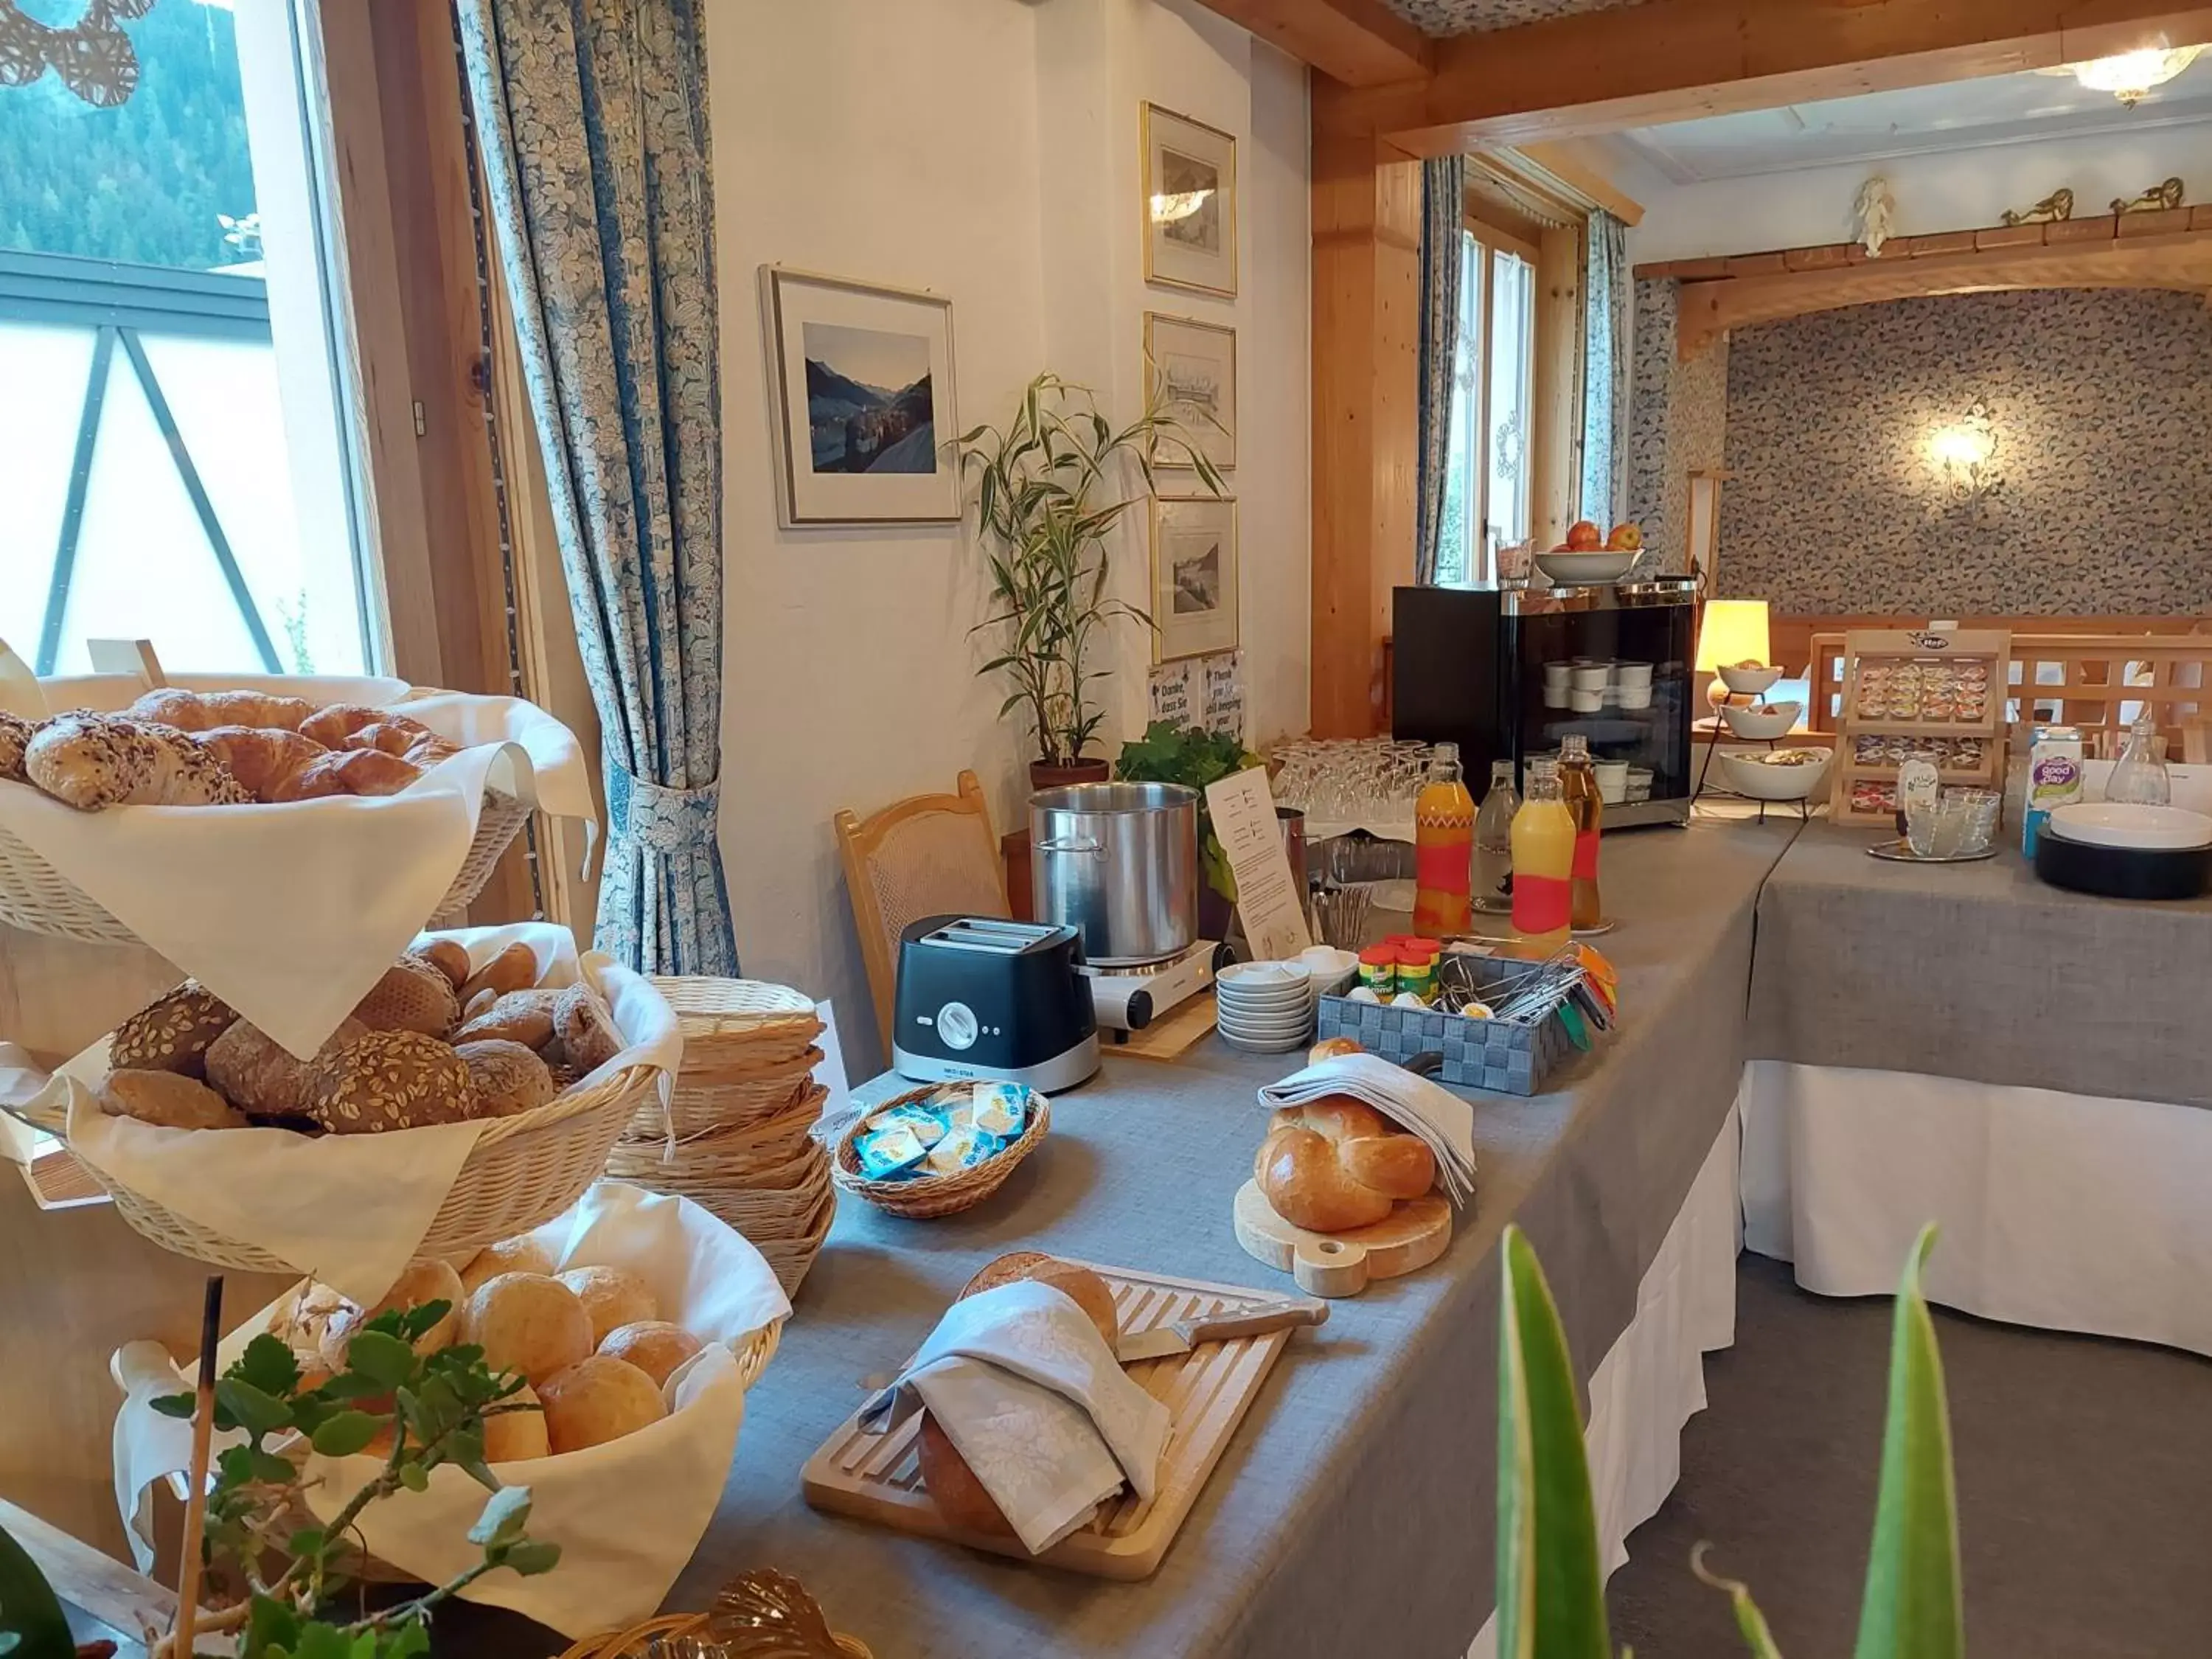 Buffet breakfast, Breakfast in Hotel Bündnerhof